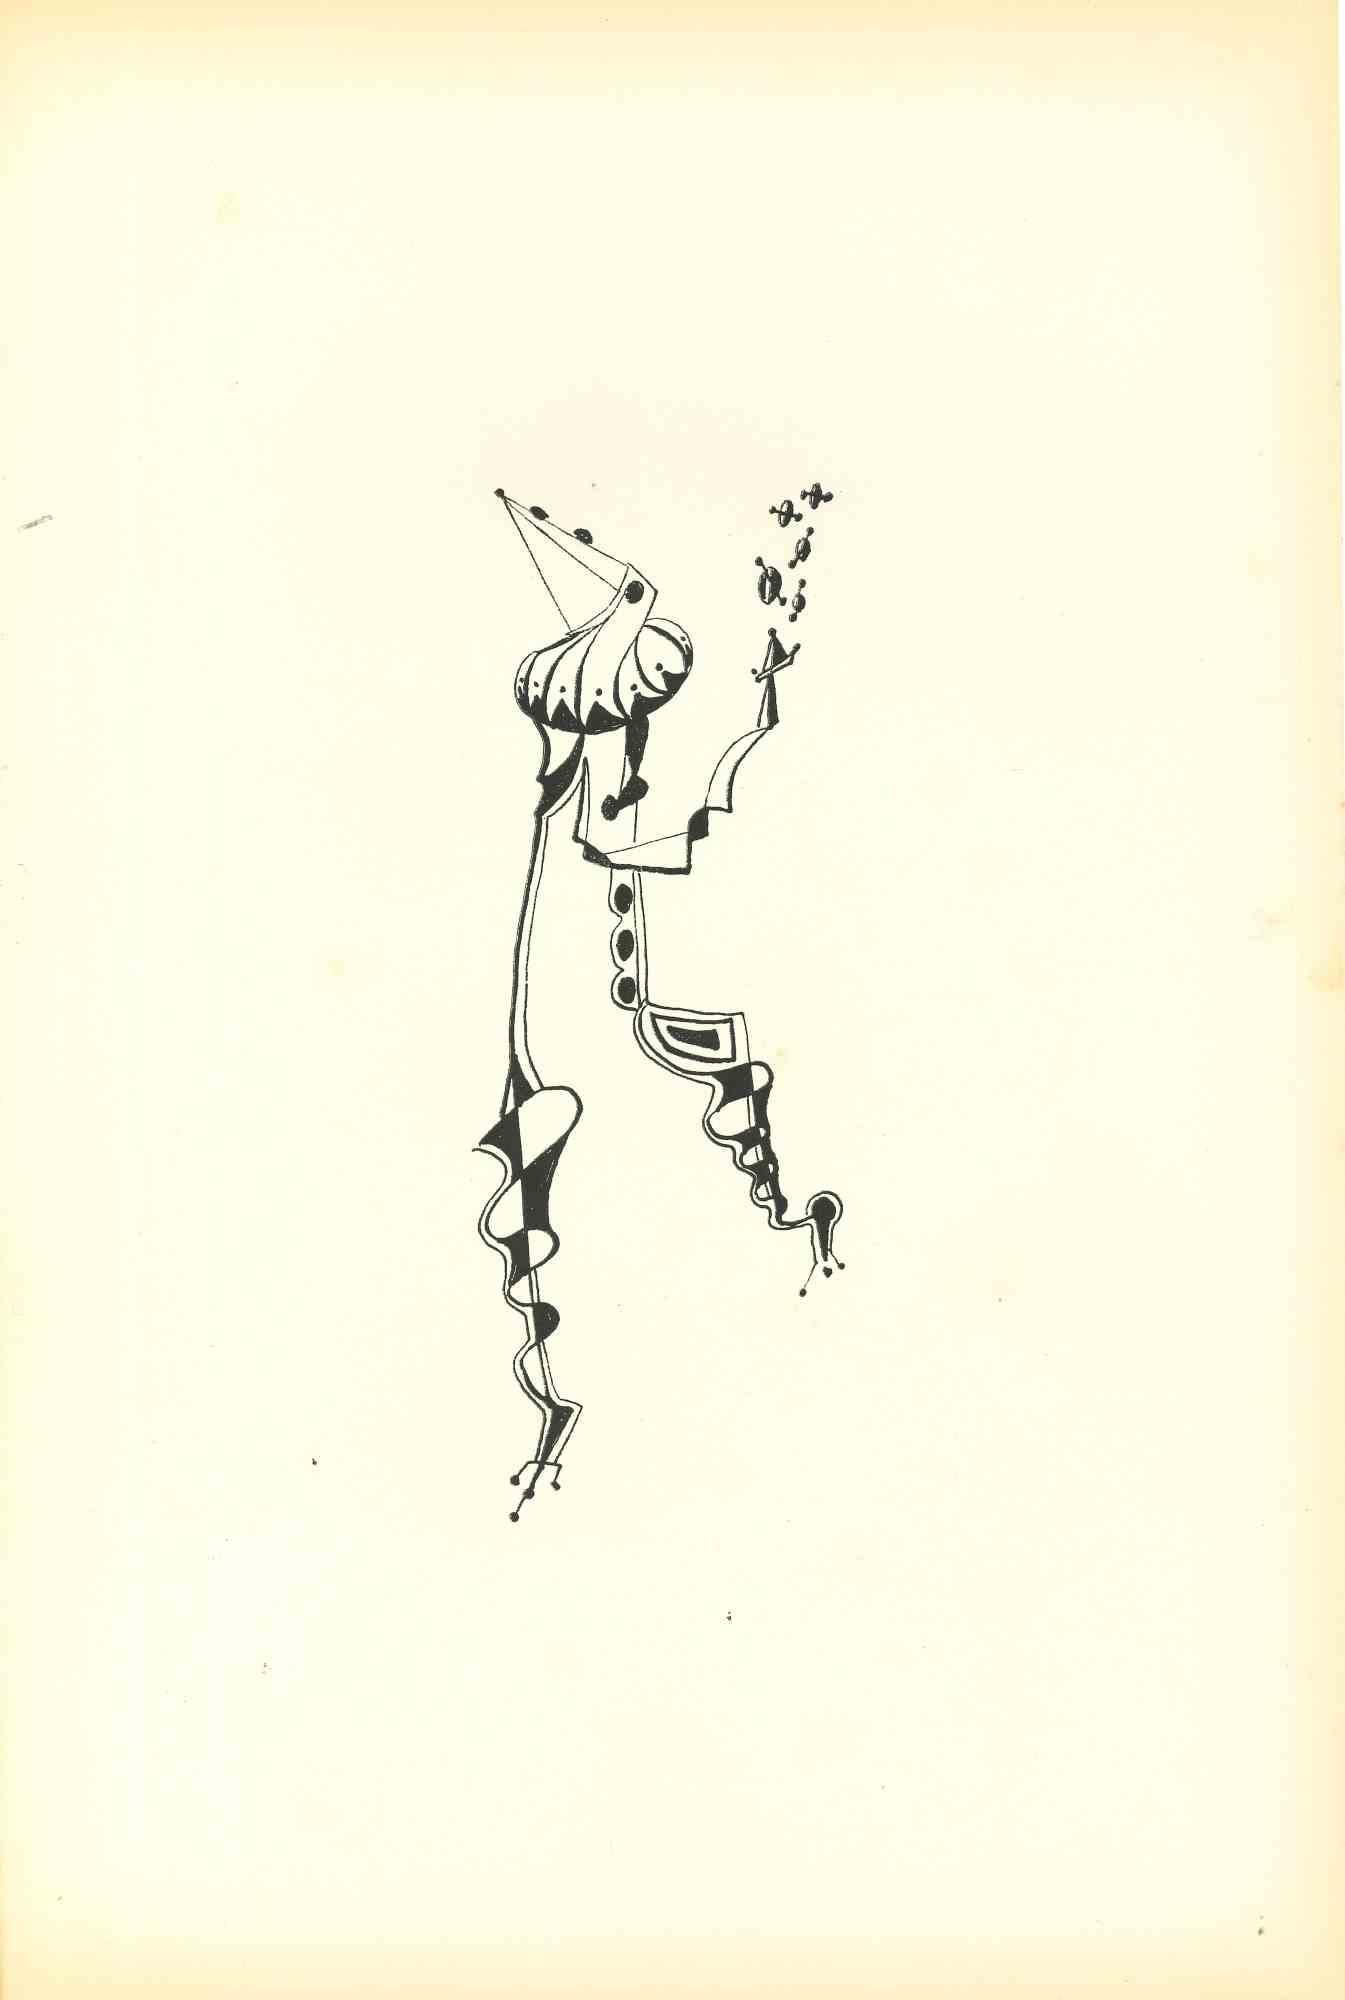 Composition Of Diodora est une lithographie originale réalisée par Bruno Capacci en 1950.

L'œuvre fait partie d'une édition en 500 exemplaires de "La nef d'argent" Paris.

En bon état, sans signature.

Bruno CAPACCI (1906-1996) est un artiste né en